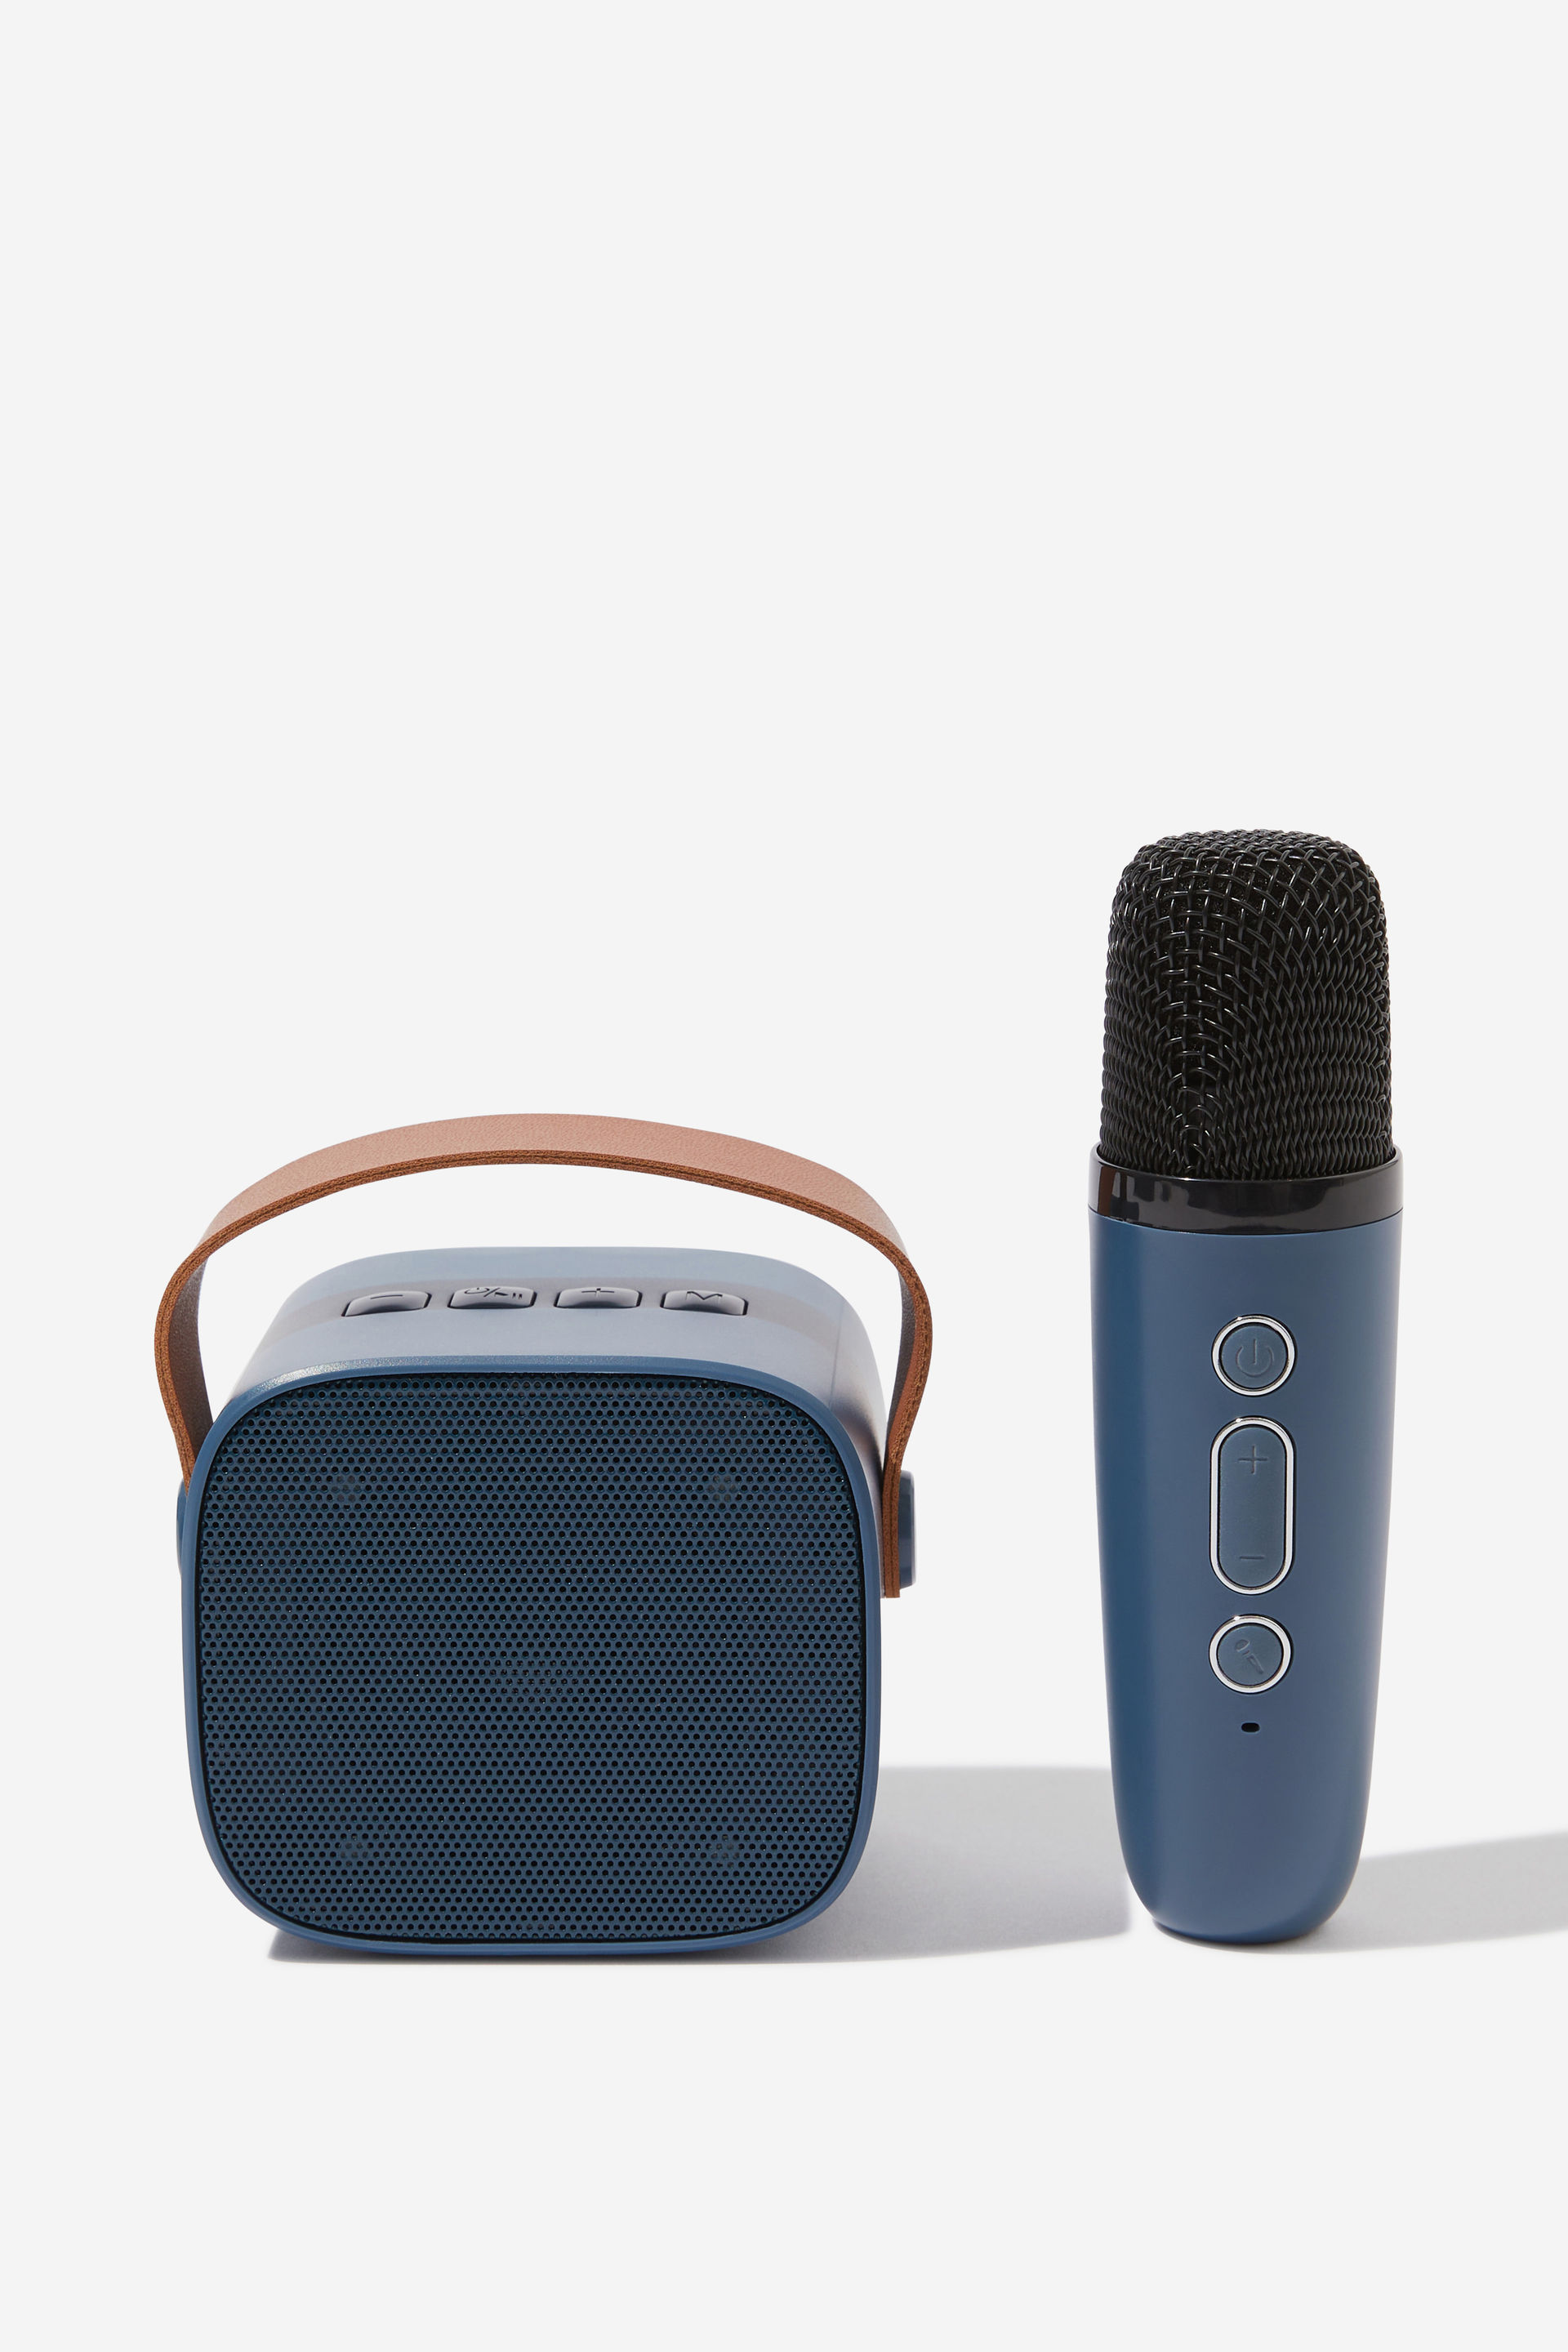 Typo - Wireless Karaoke Speaker - Navy